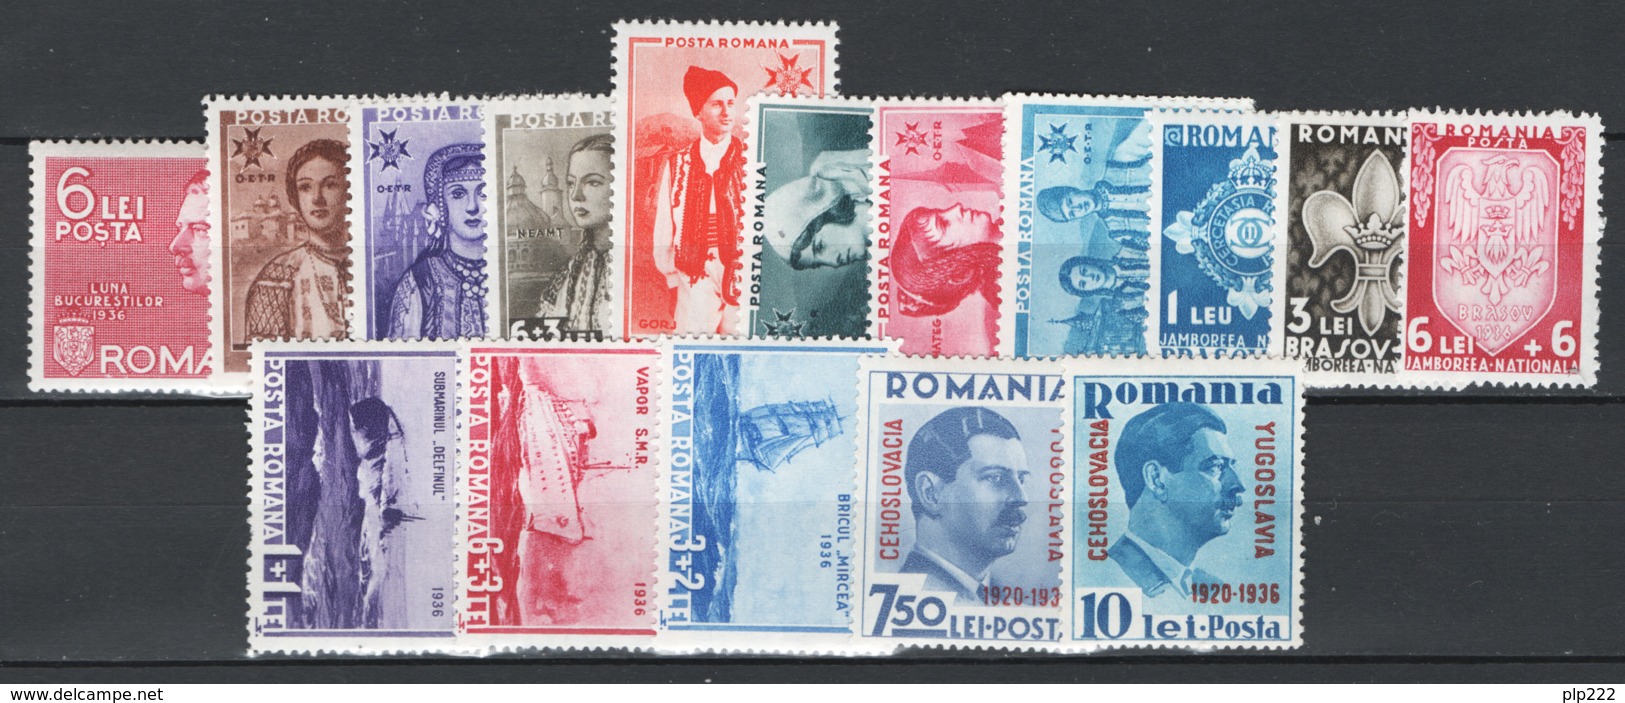 Romania 1936 Annata Completa / Complete Year Set **/MNH VF/F - Annate Complete